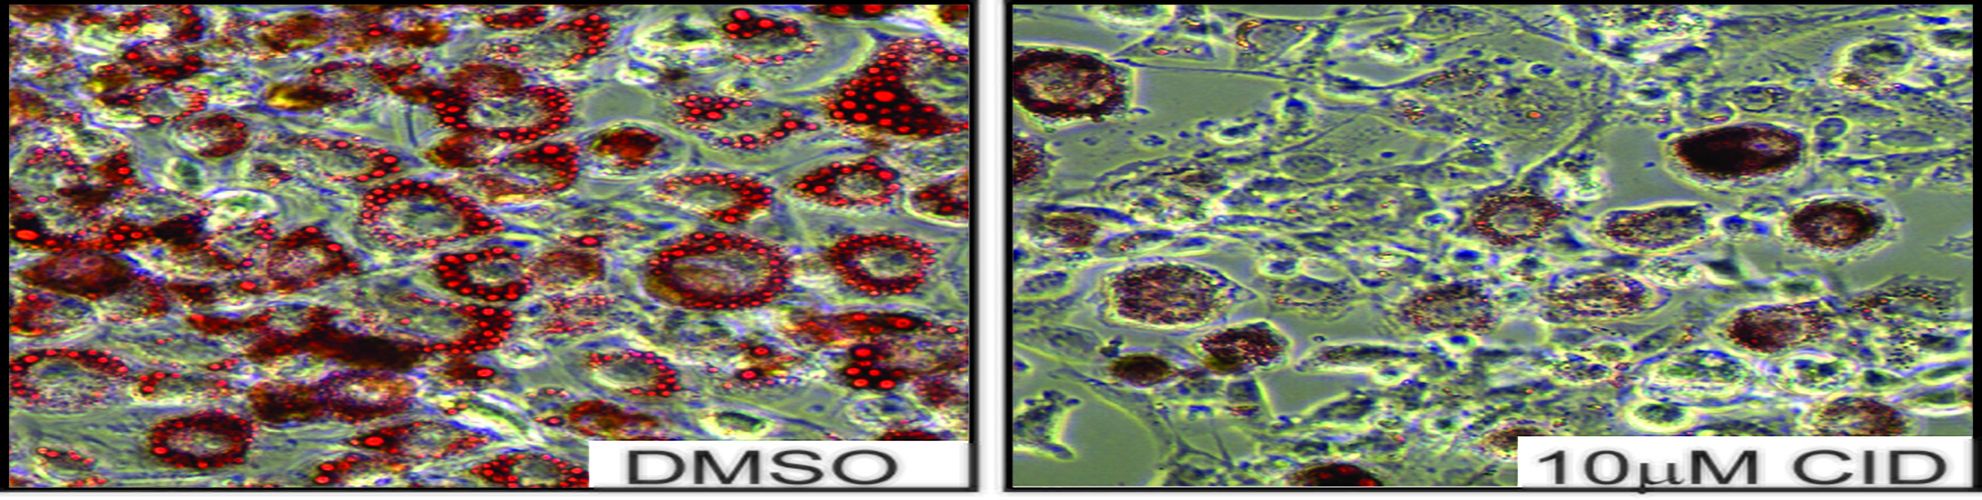 Fettzellen, die während ihrer Differenzierung mit einem PKD-Hemmstoff behandelt wurden (Abbildung rechts), speichern sehr viel weniger Fetttröpfchen (rot) als unbehandelte Zellen (Abbildung links)